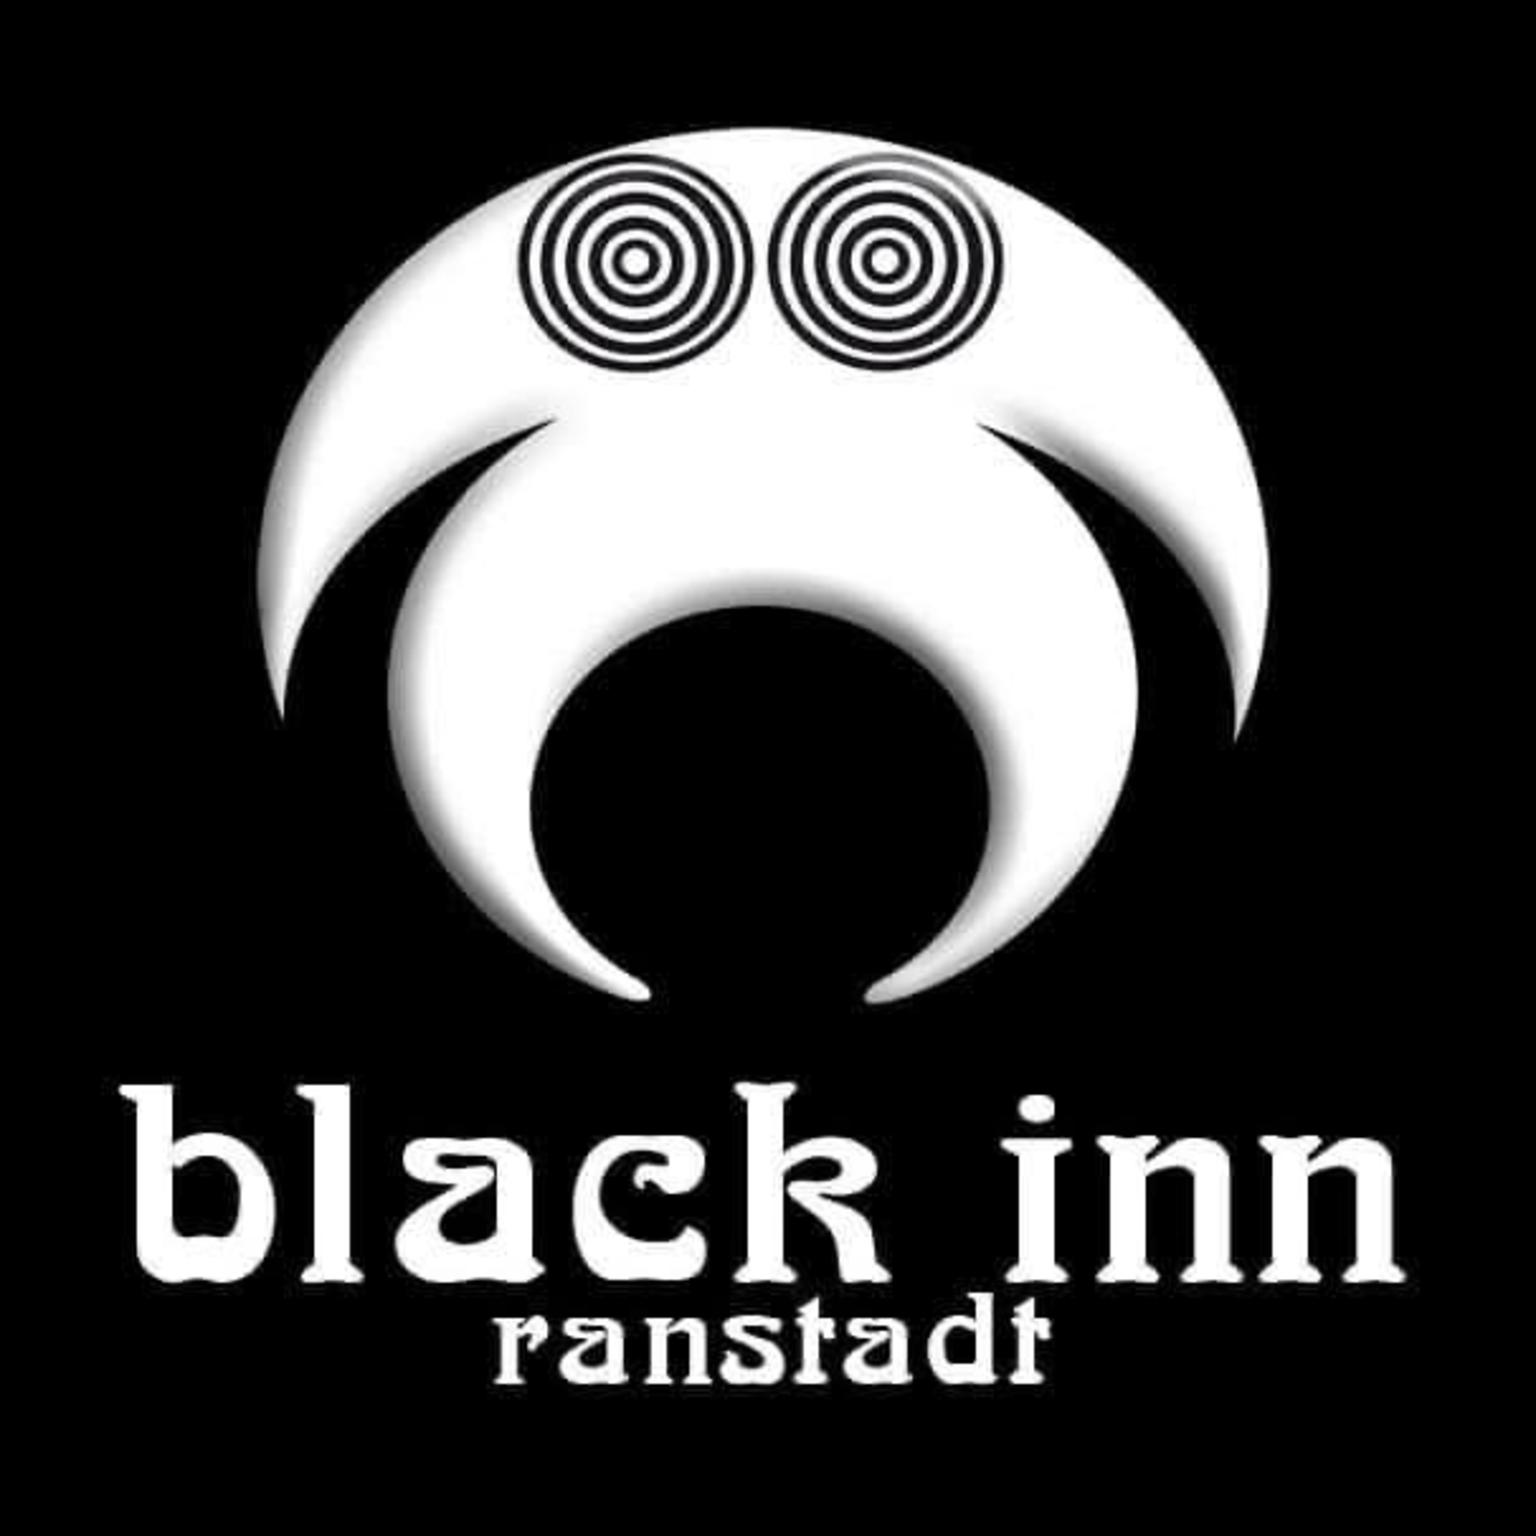 Black Inn